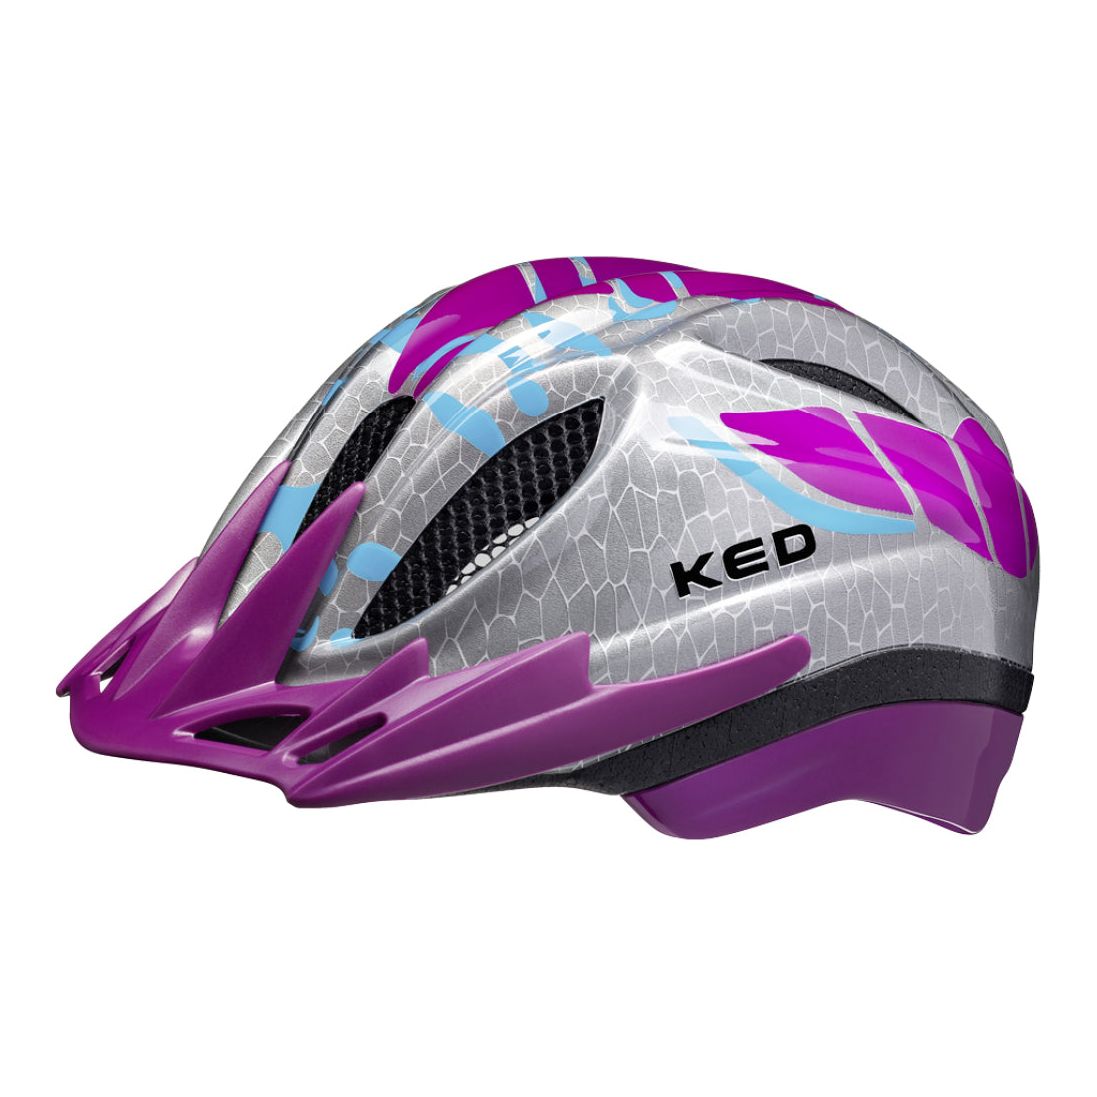 Casco de bicicleta Ked Meggy II S M (49-55cm) - Estrella violeta